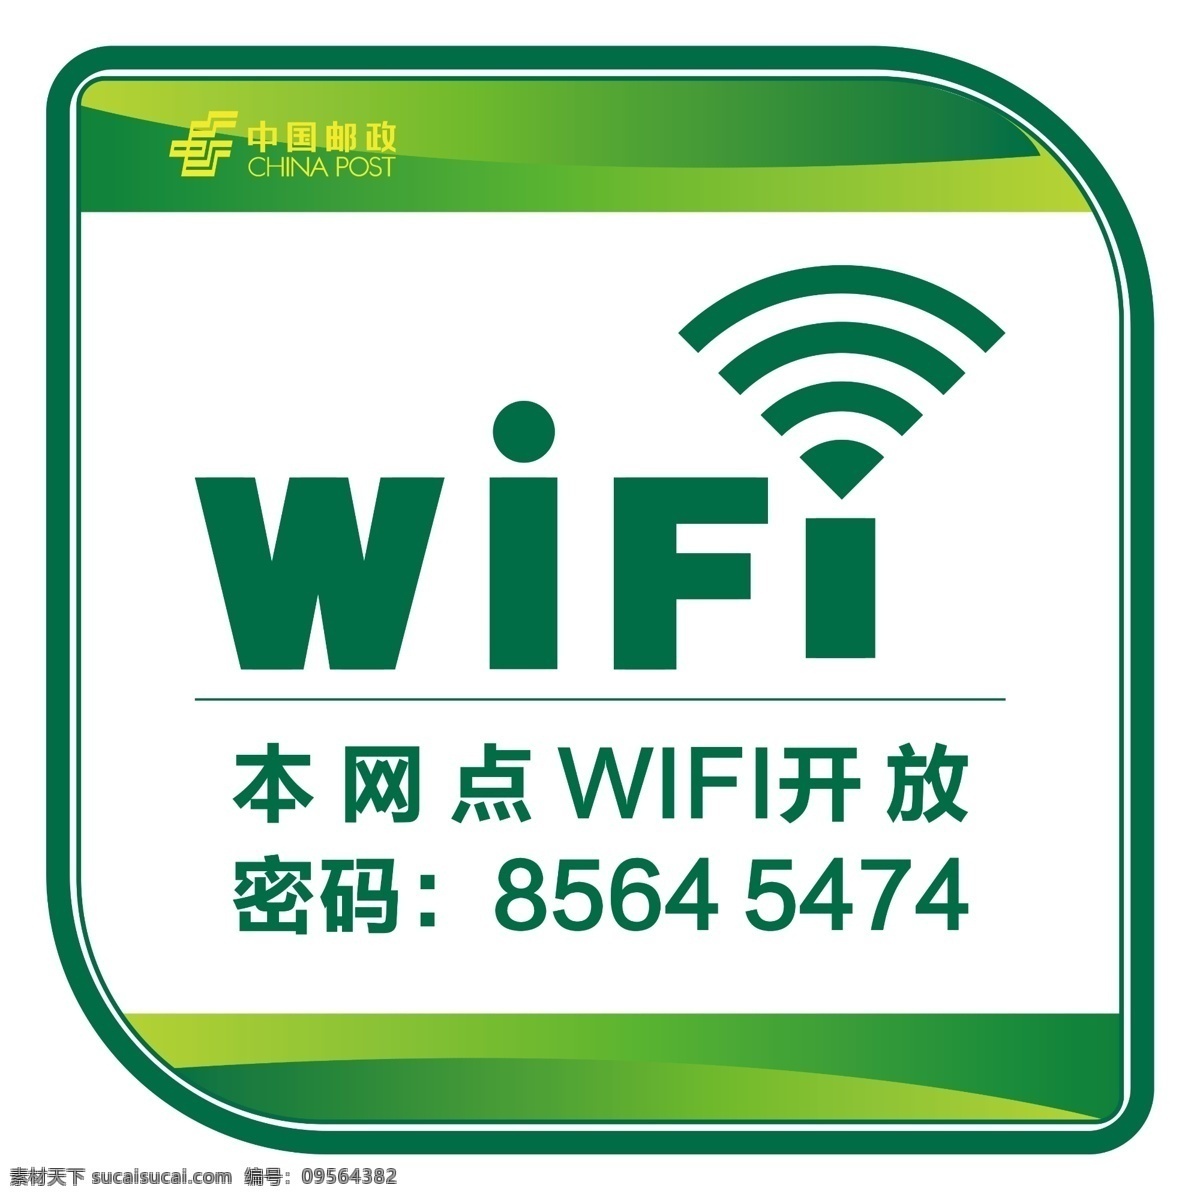 wifi 图标 免费 标志 wifi图标 wifi标志 免费wifi wifi开放 开放